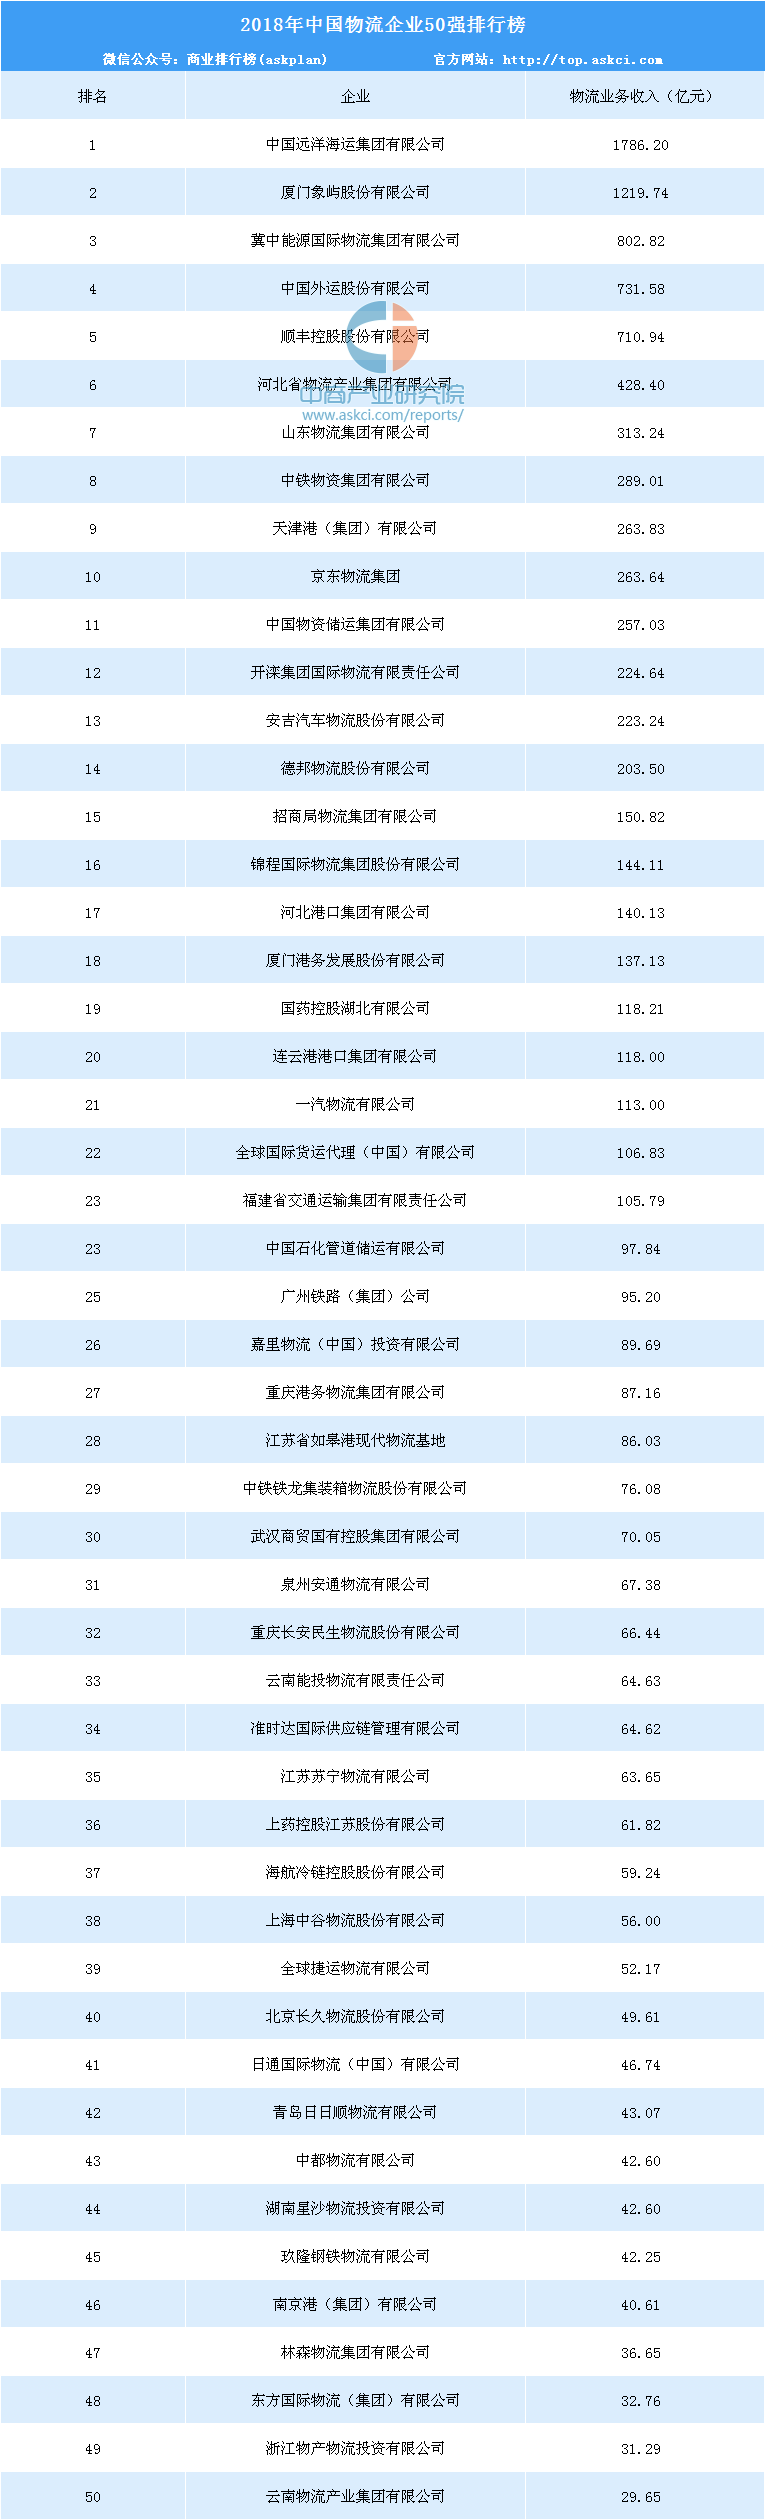 2018年中国物流企业50强排行榜